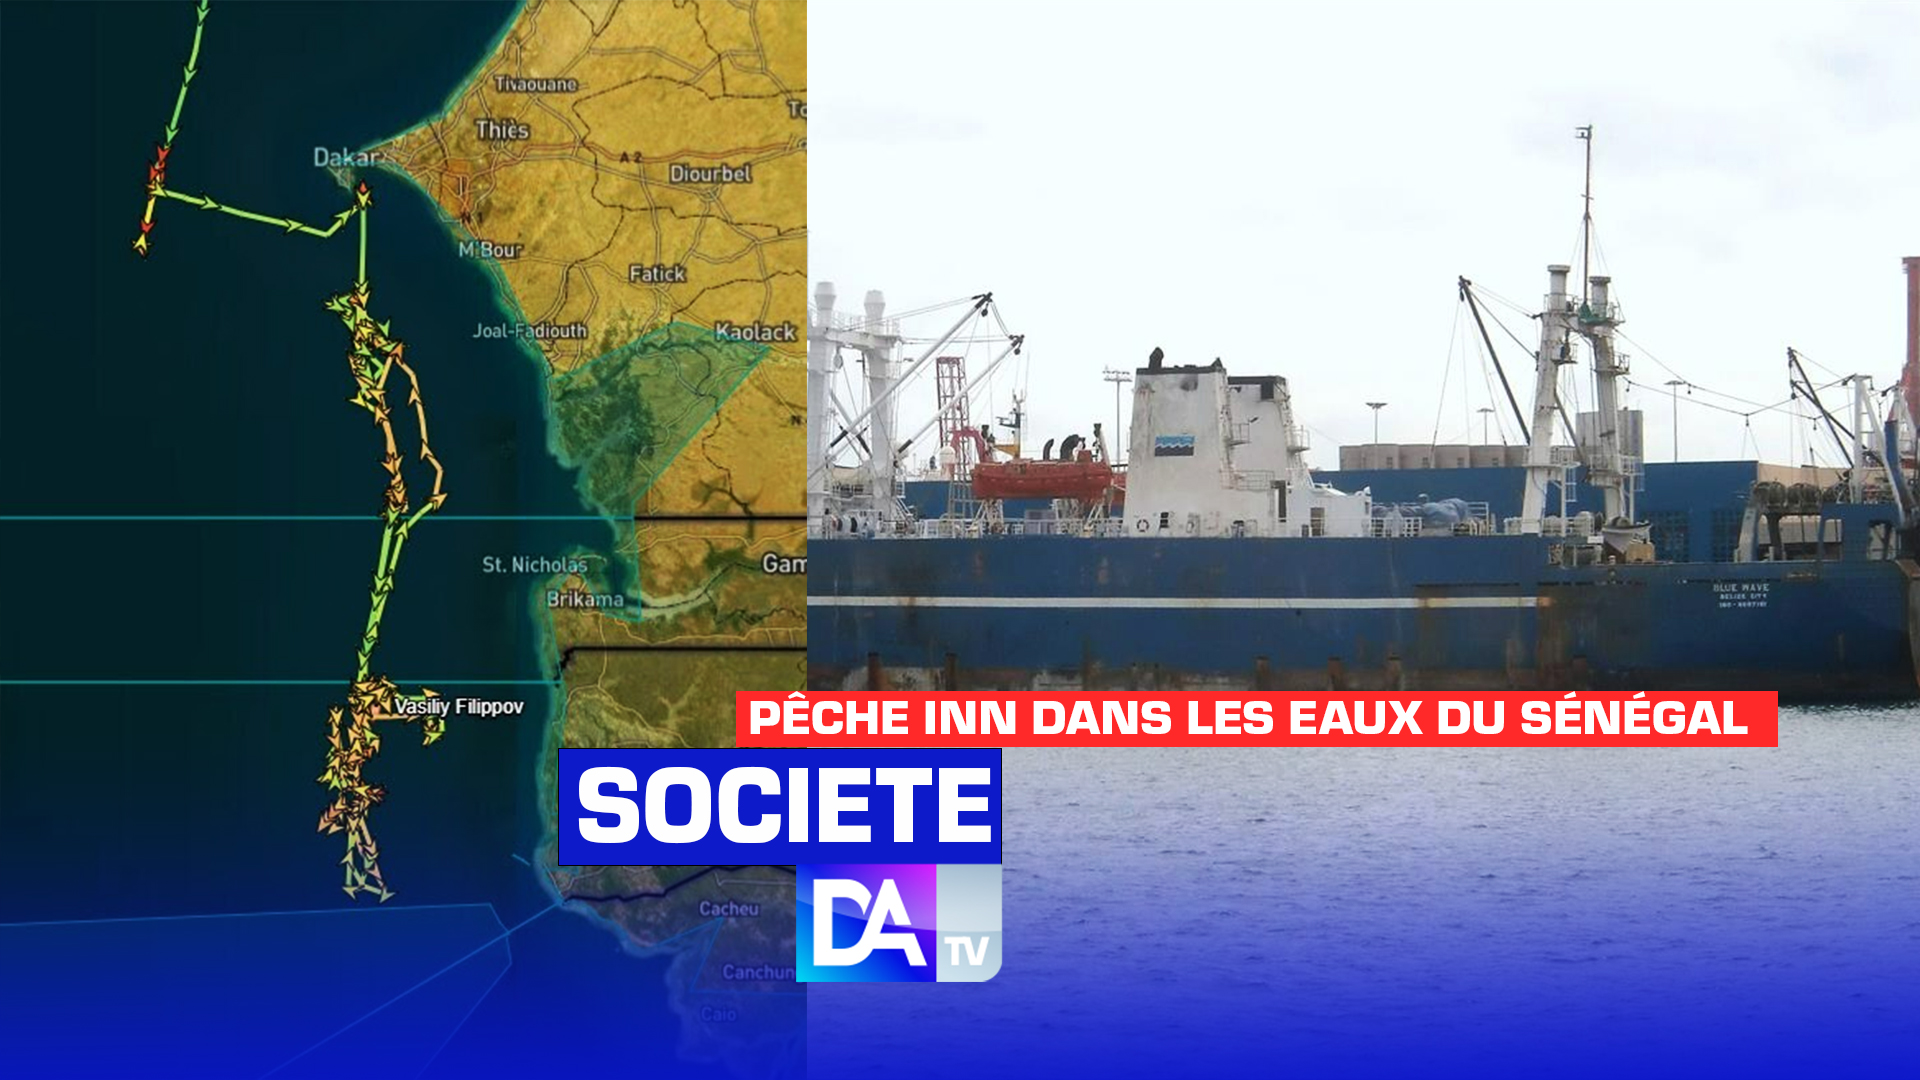 Pêche INN dans les eaux du Sénégal : Greenpeace Afrique alerte sur la présence illicite d’un bateau russe de 2000 tonnes